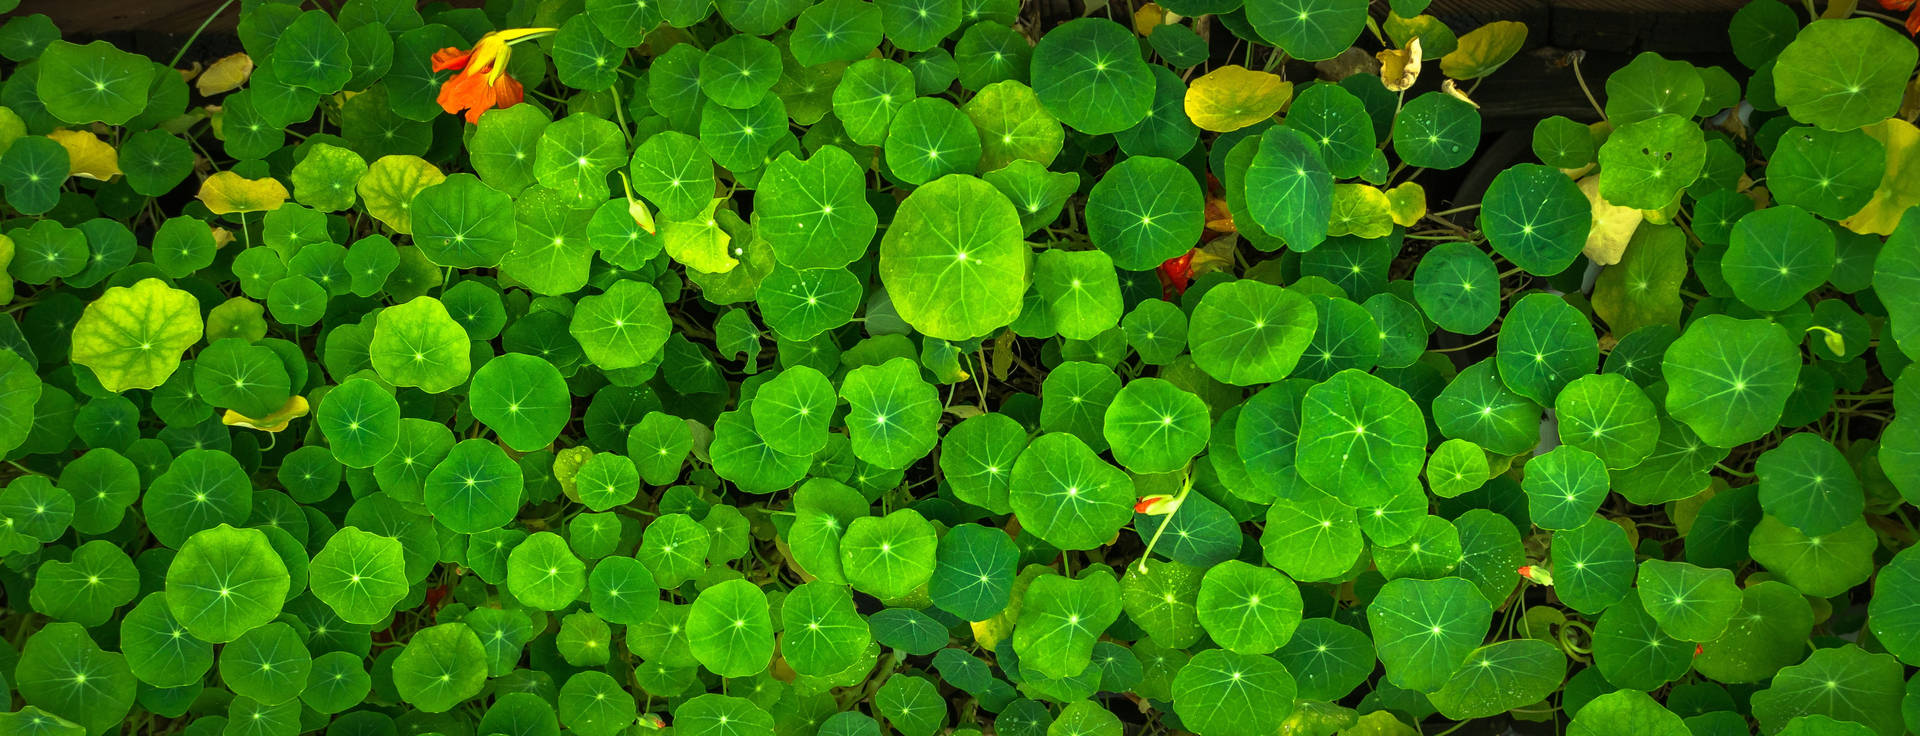 Pennywort Green Leaves